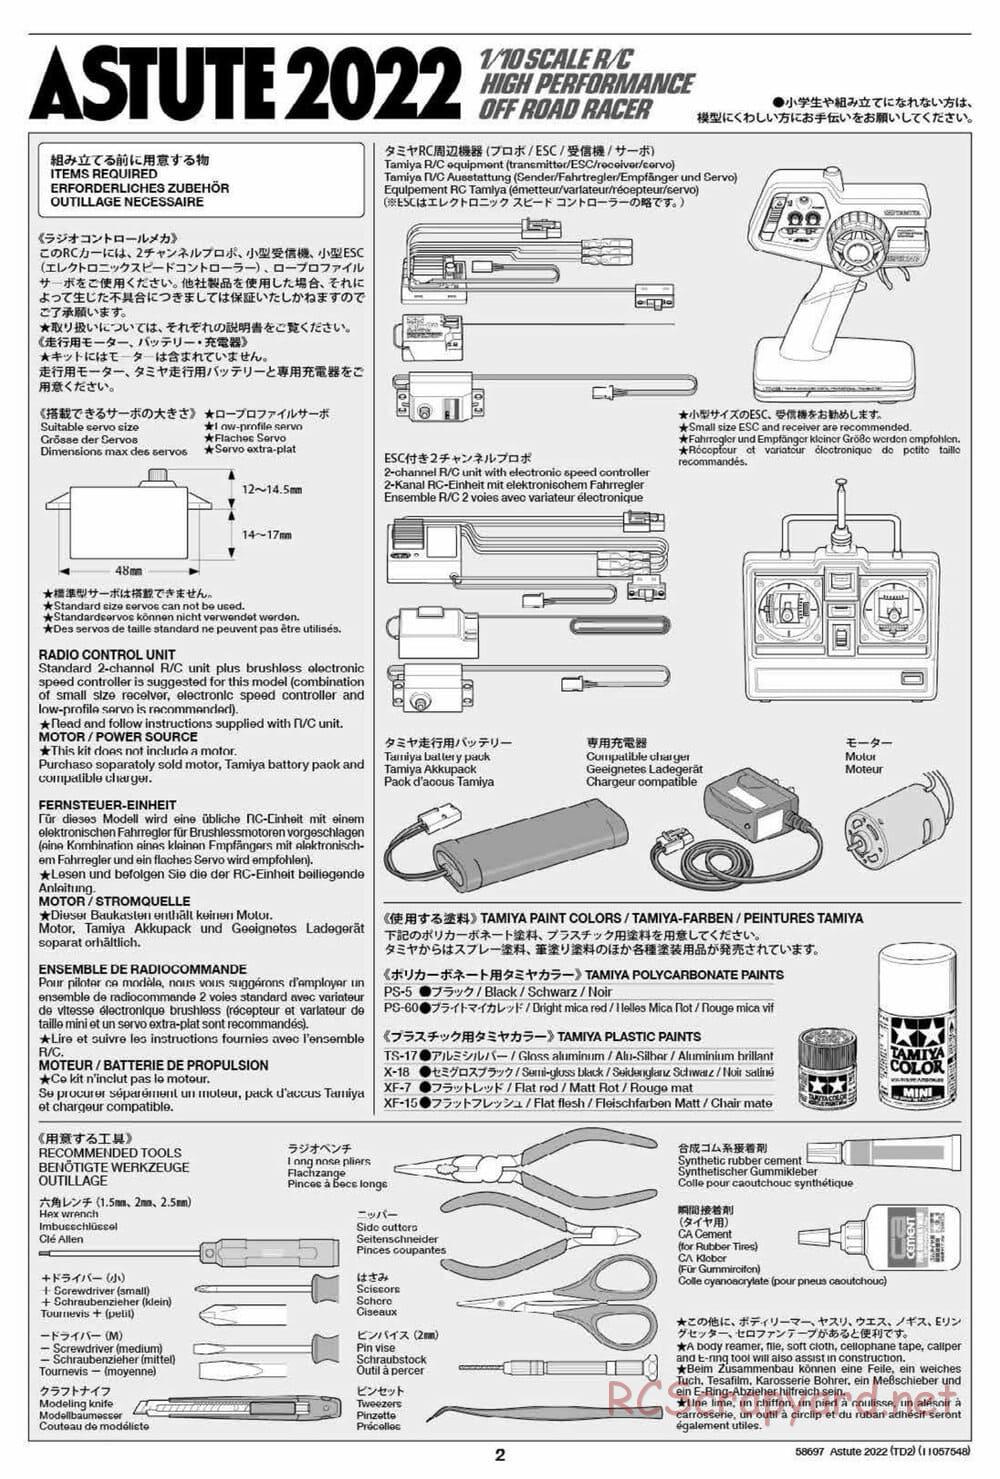 Tamiya - Astute 2022 - TD2 Chassis - Manual - Page 2